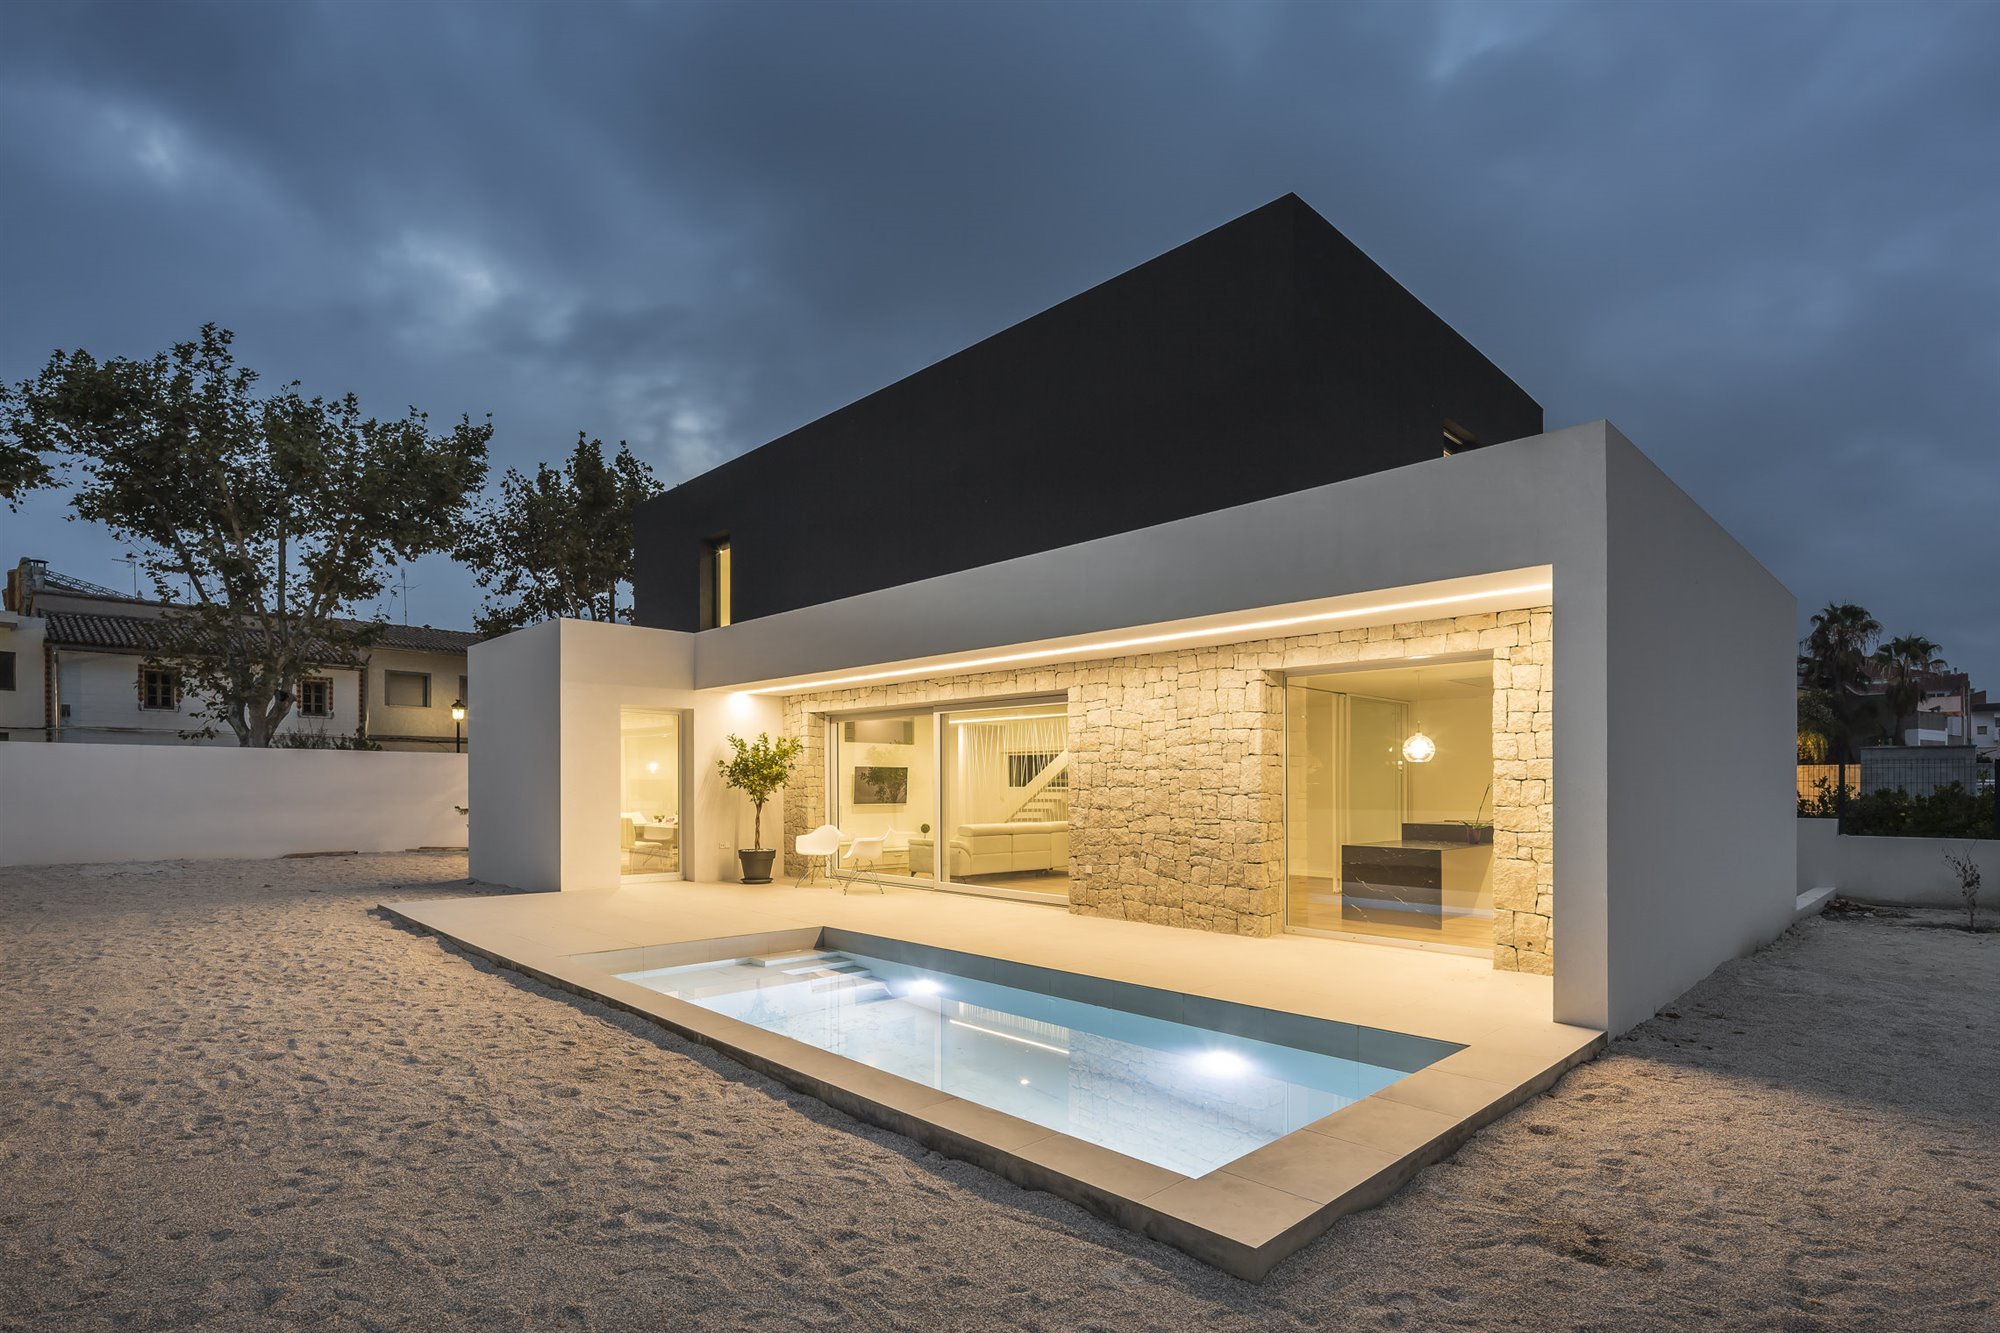 Casa moderna con fachada en blanco y negro en Valencia vista de noche con piscina